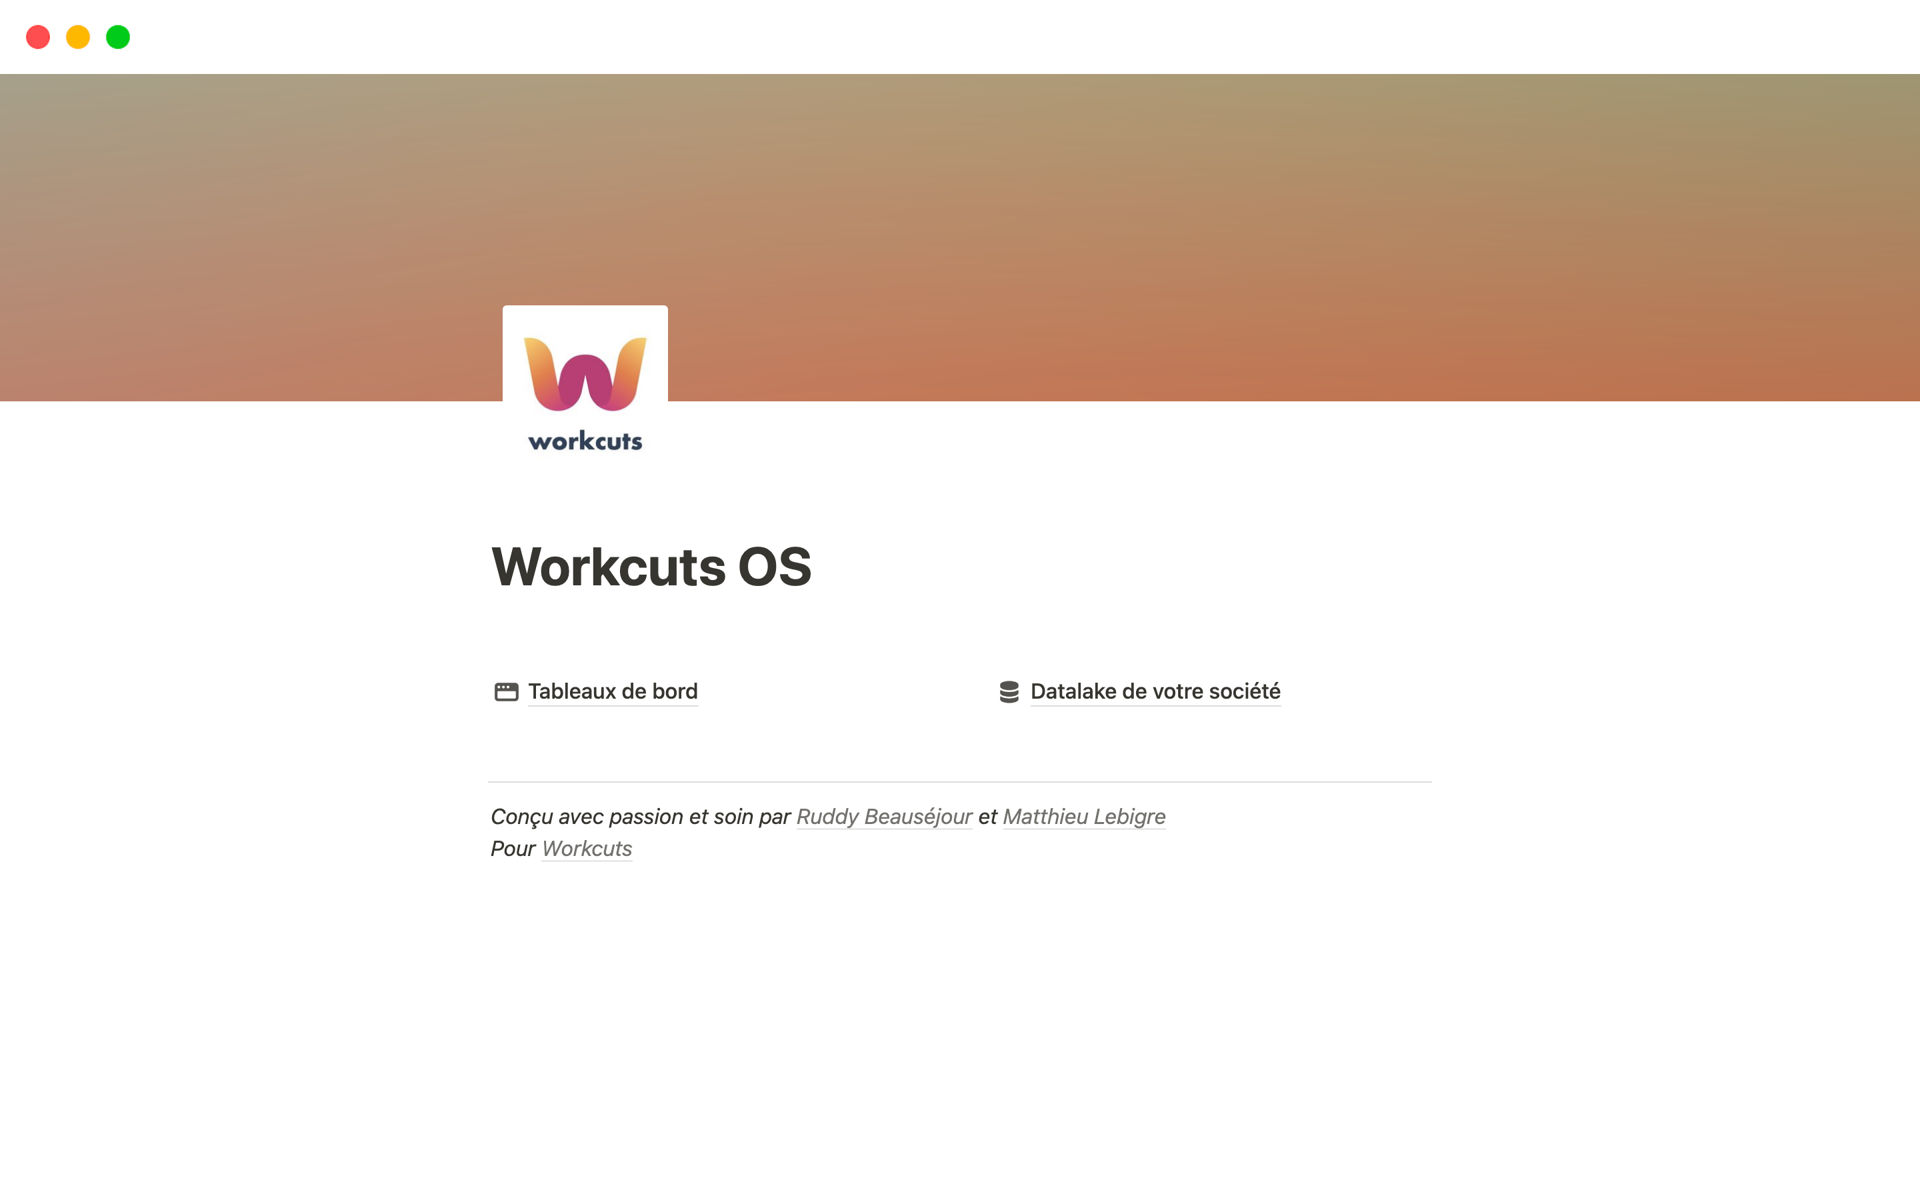 Uma prévia do modelo para Workcuts OS